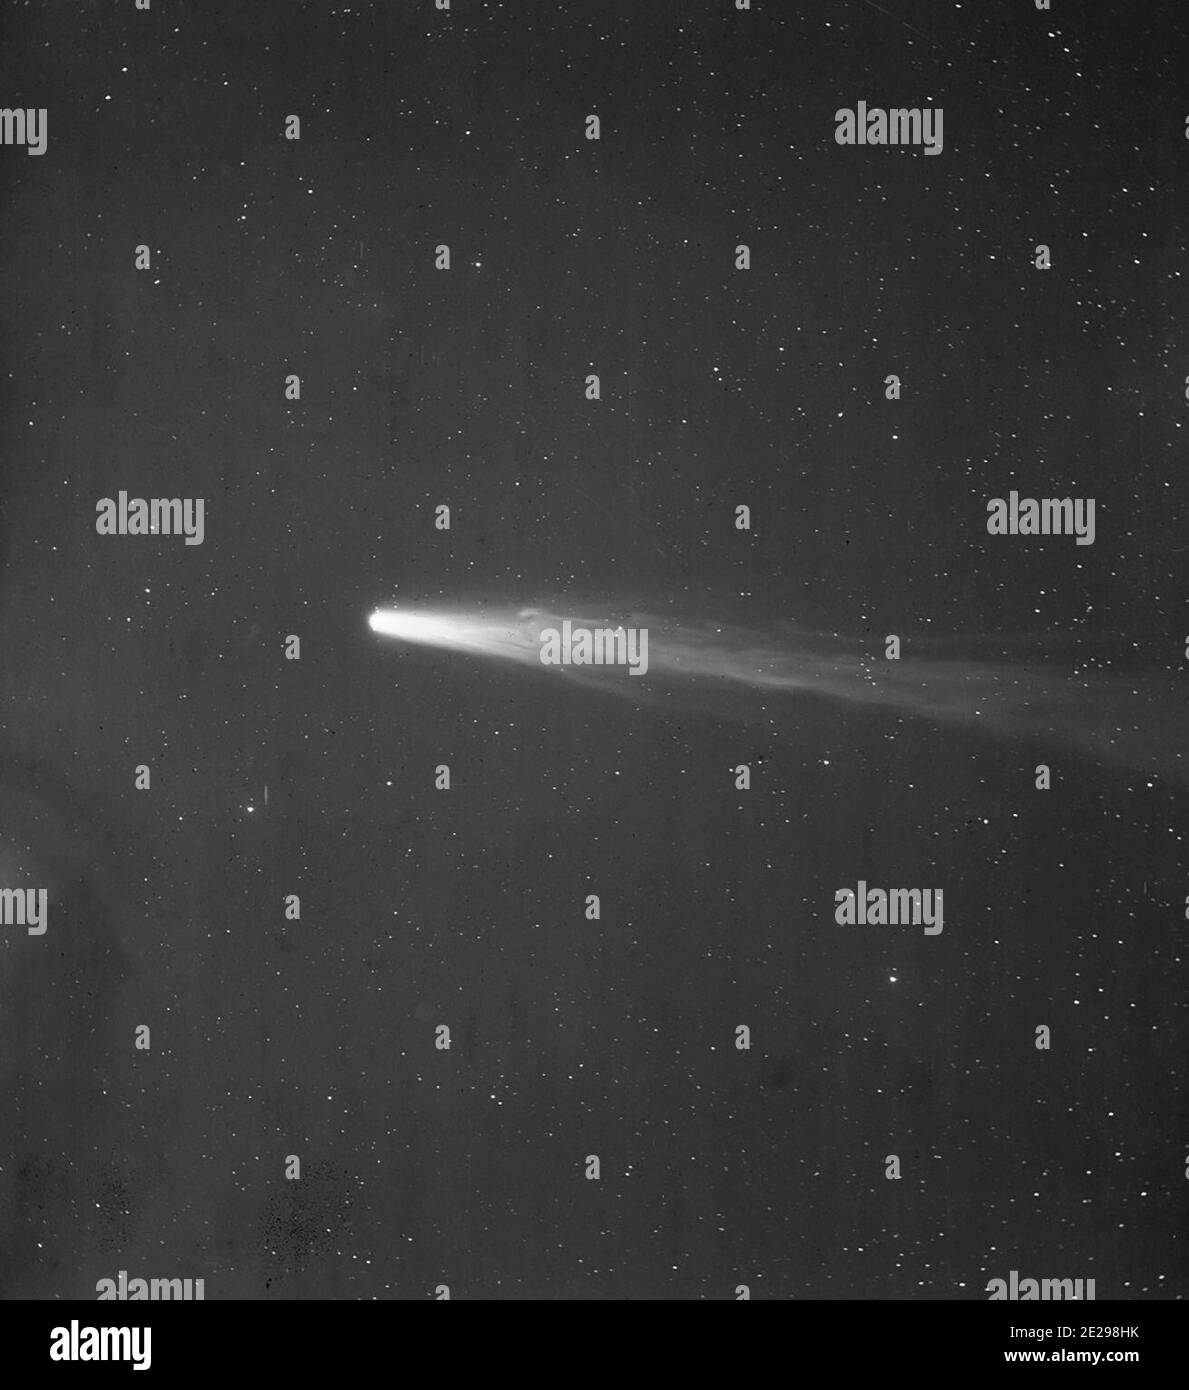 Teil der Platte b41215 von Halleys Kometen, aufgenommen am 21. April 1910 aus Arequipa, Peru mit dem 8-Zoll-Bache Doublet, Voigtlander. Die Exposition betrug 30 Minuten Stockfoto